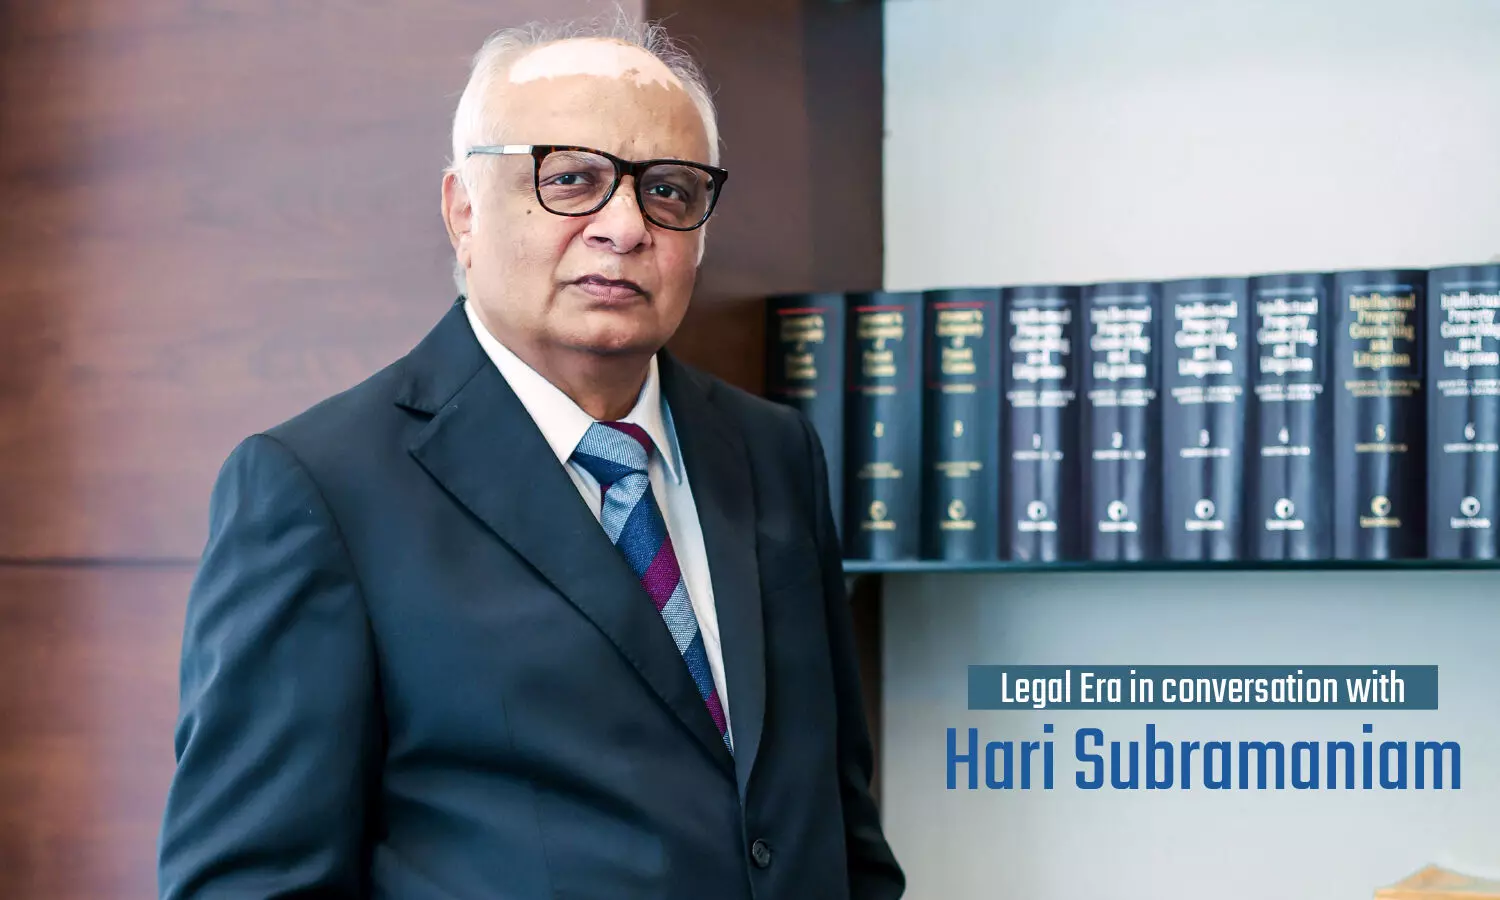 Legal Era in conversation with Hari Subramaniam